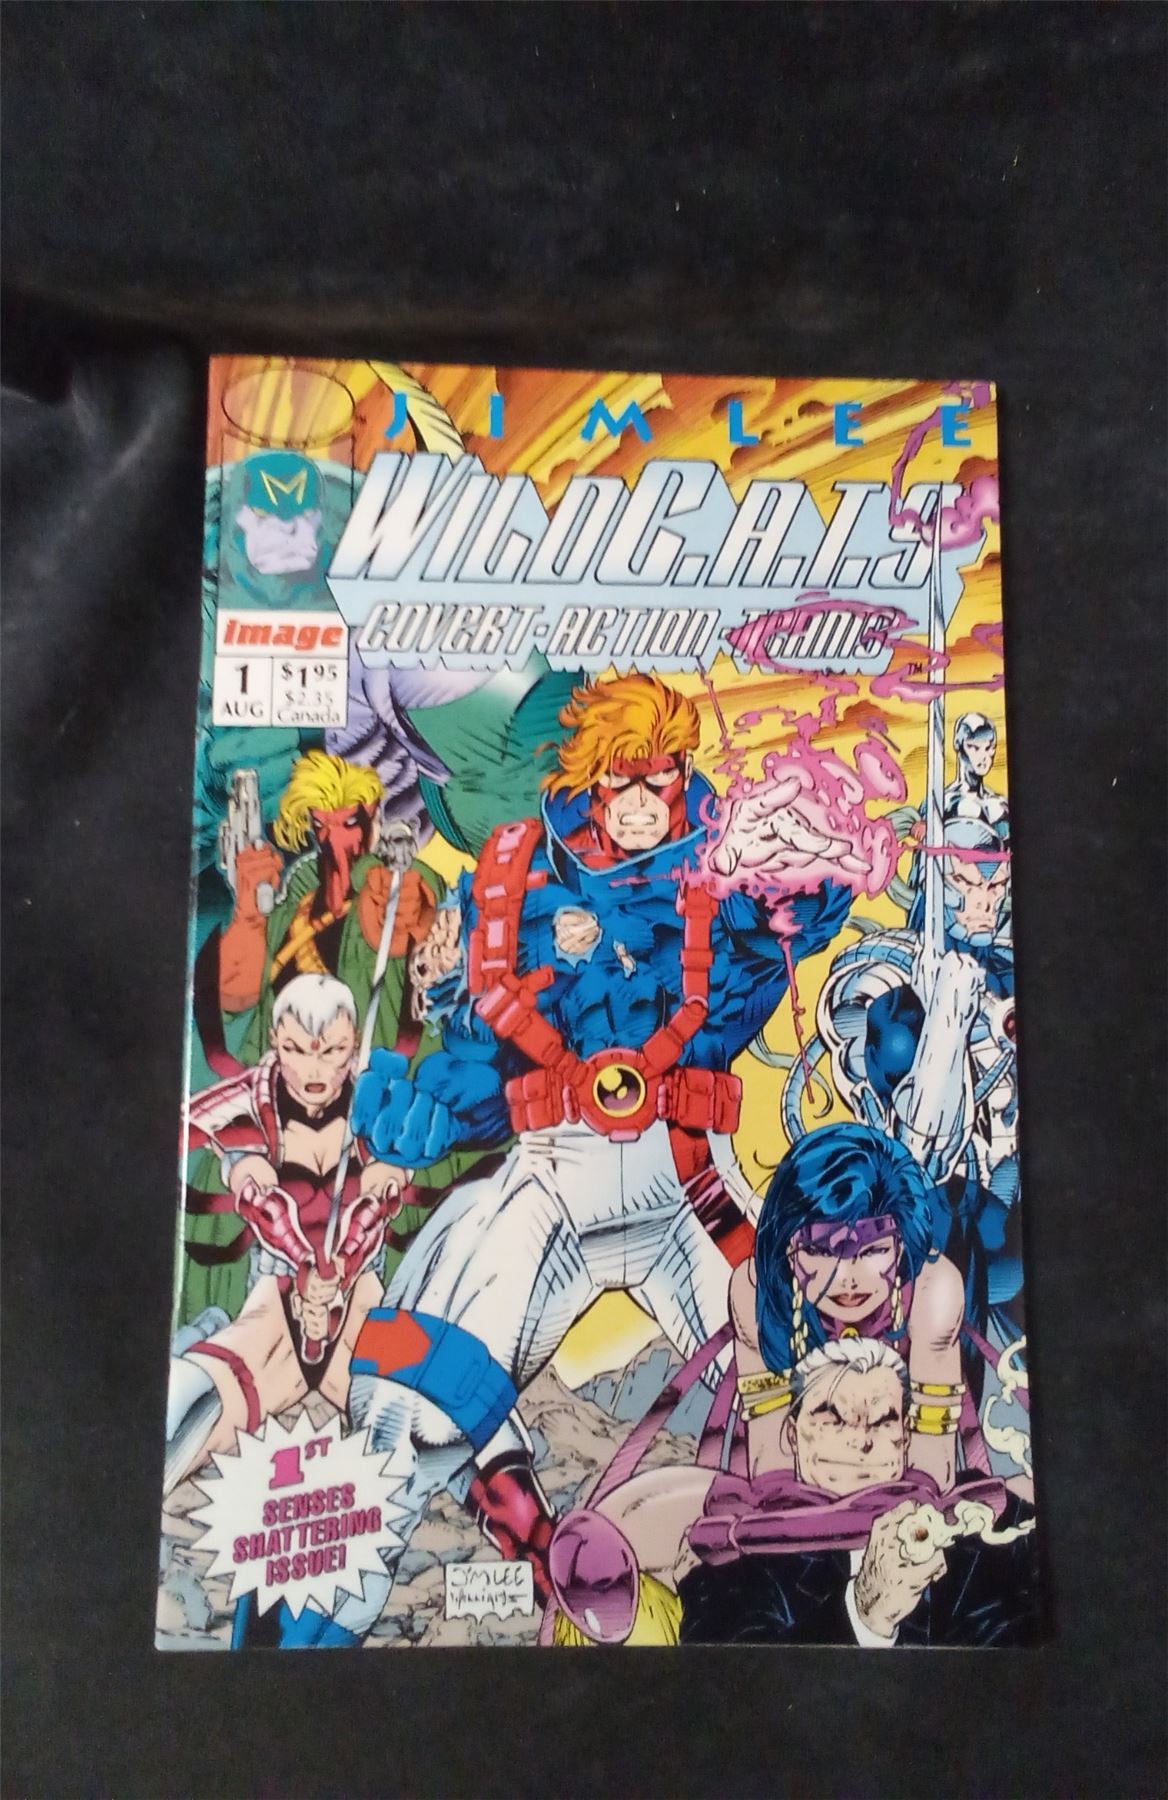 WildC.A.T.s: Covert Action Teams #1 1992 wildstorm Comic Book wildstorm Comic Book